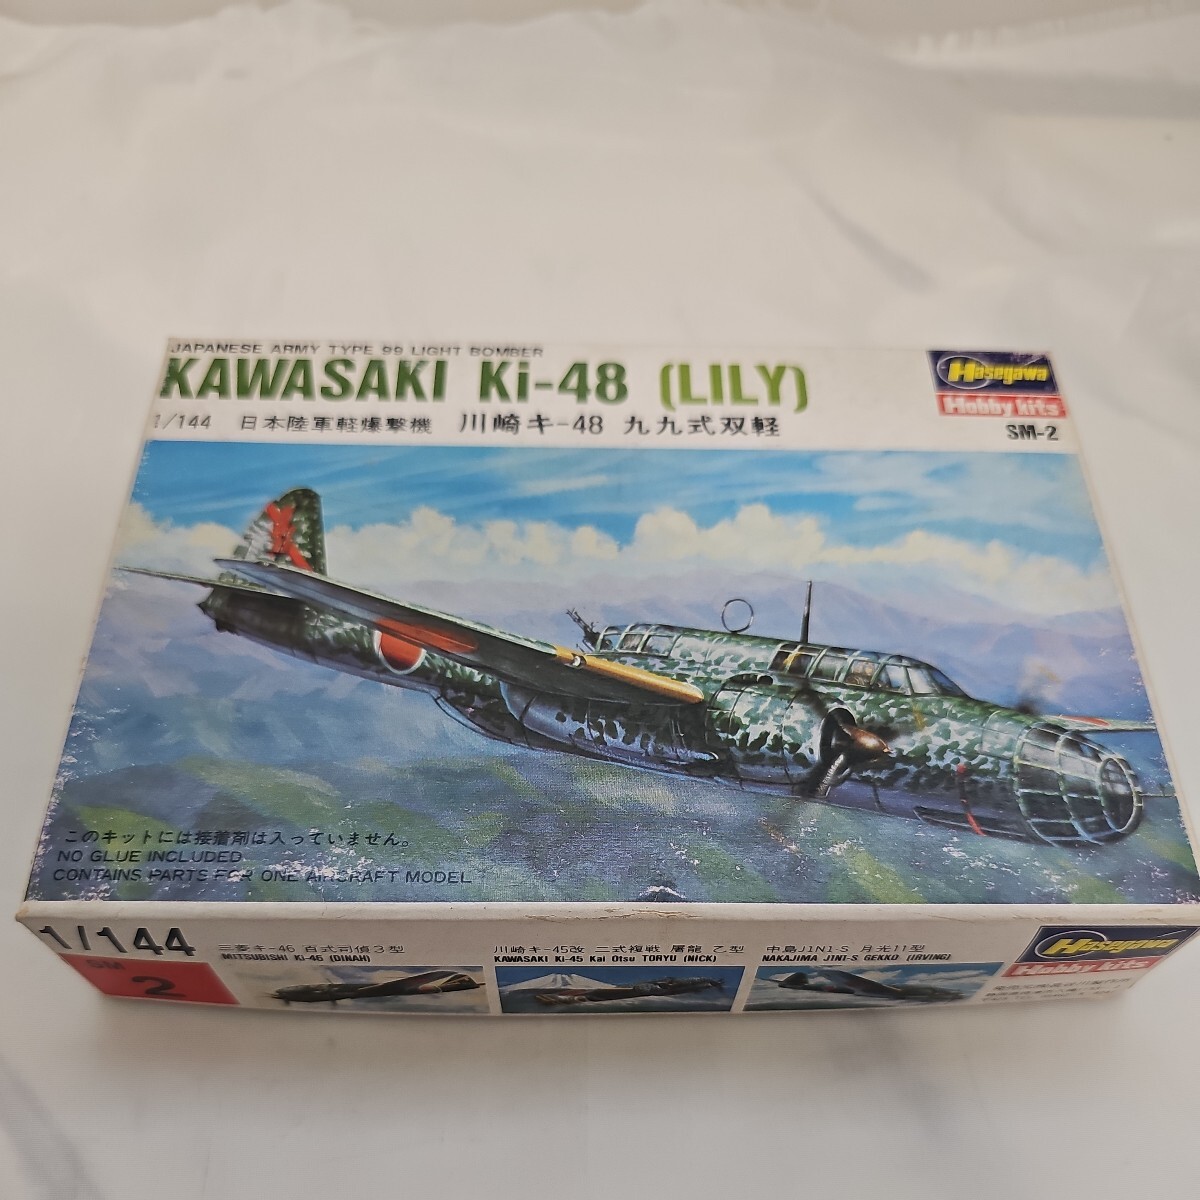 JAPANESE ARMY TYPE 99 LIGHT BOMBER     KAWASAKI Ki-48 (LILY)1/144 日本陸軍軽爆撃機 川崎キ-48 九九式双軽 ハセガワの画像1